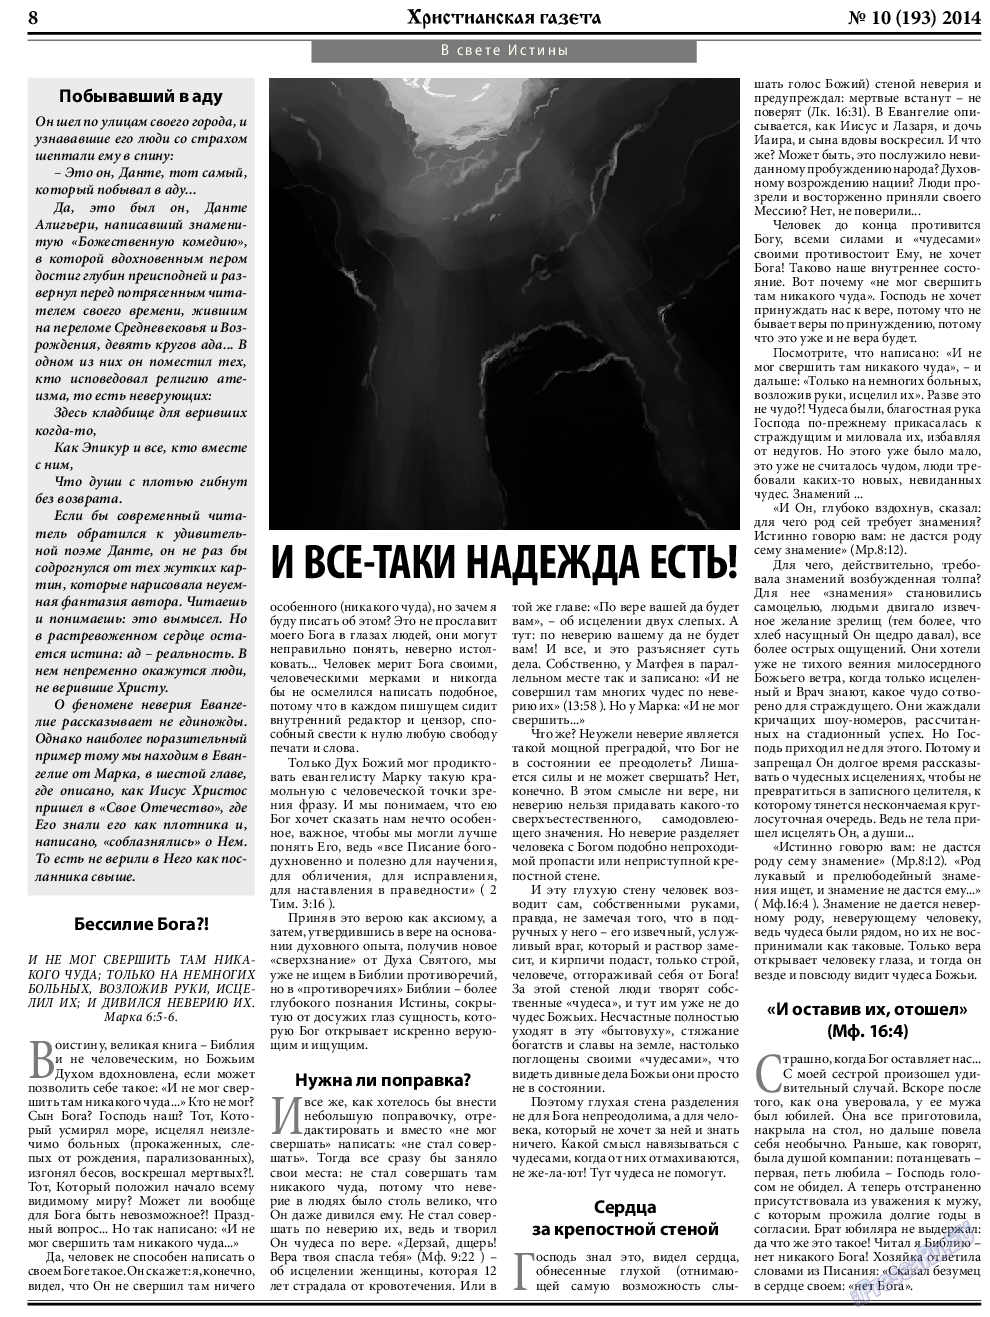 Христианская газета, газета. 2014 №10 стр.8